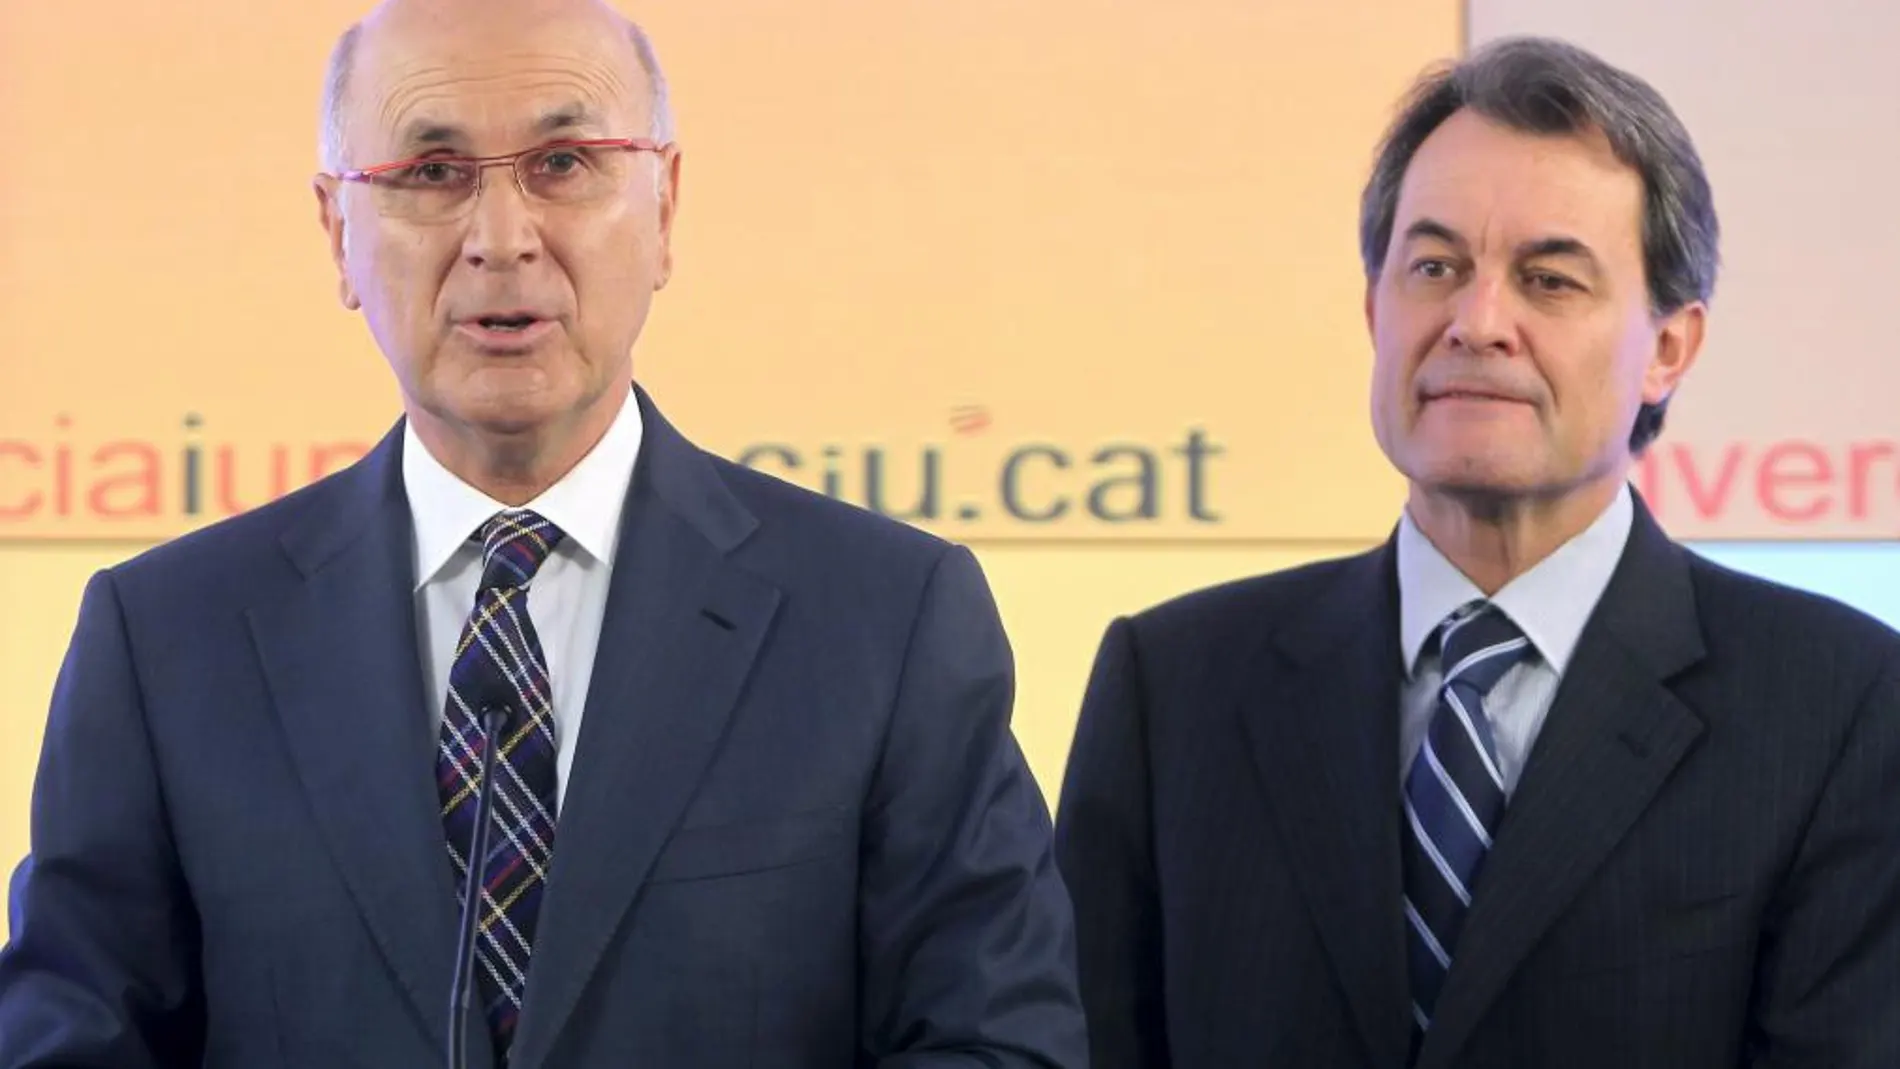 Los lideres de Convergecia i Unió (CIU), Artur Mas (d) y Josep Antoni Duran i Lleida, en una imagen de archivo